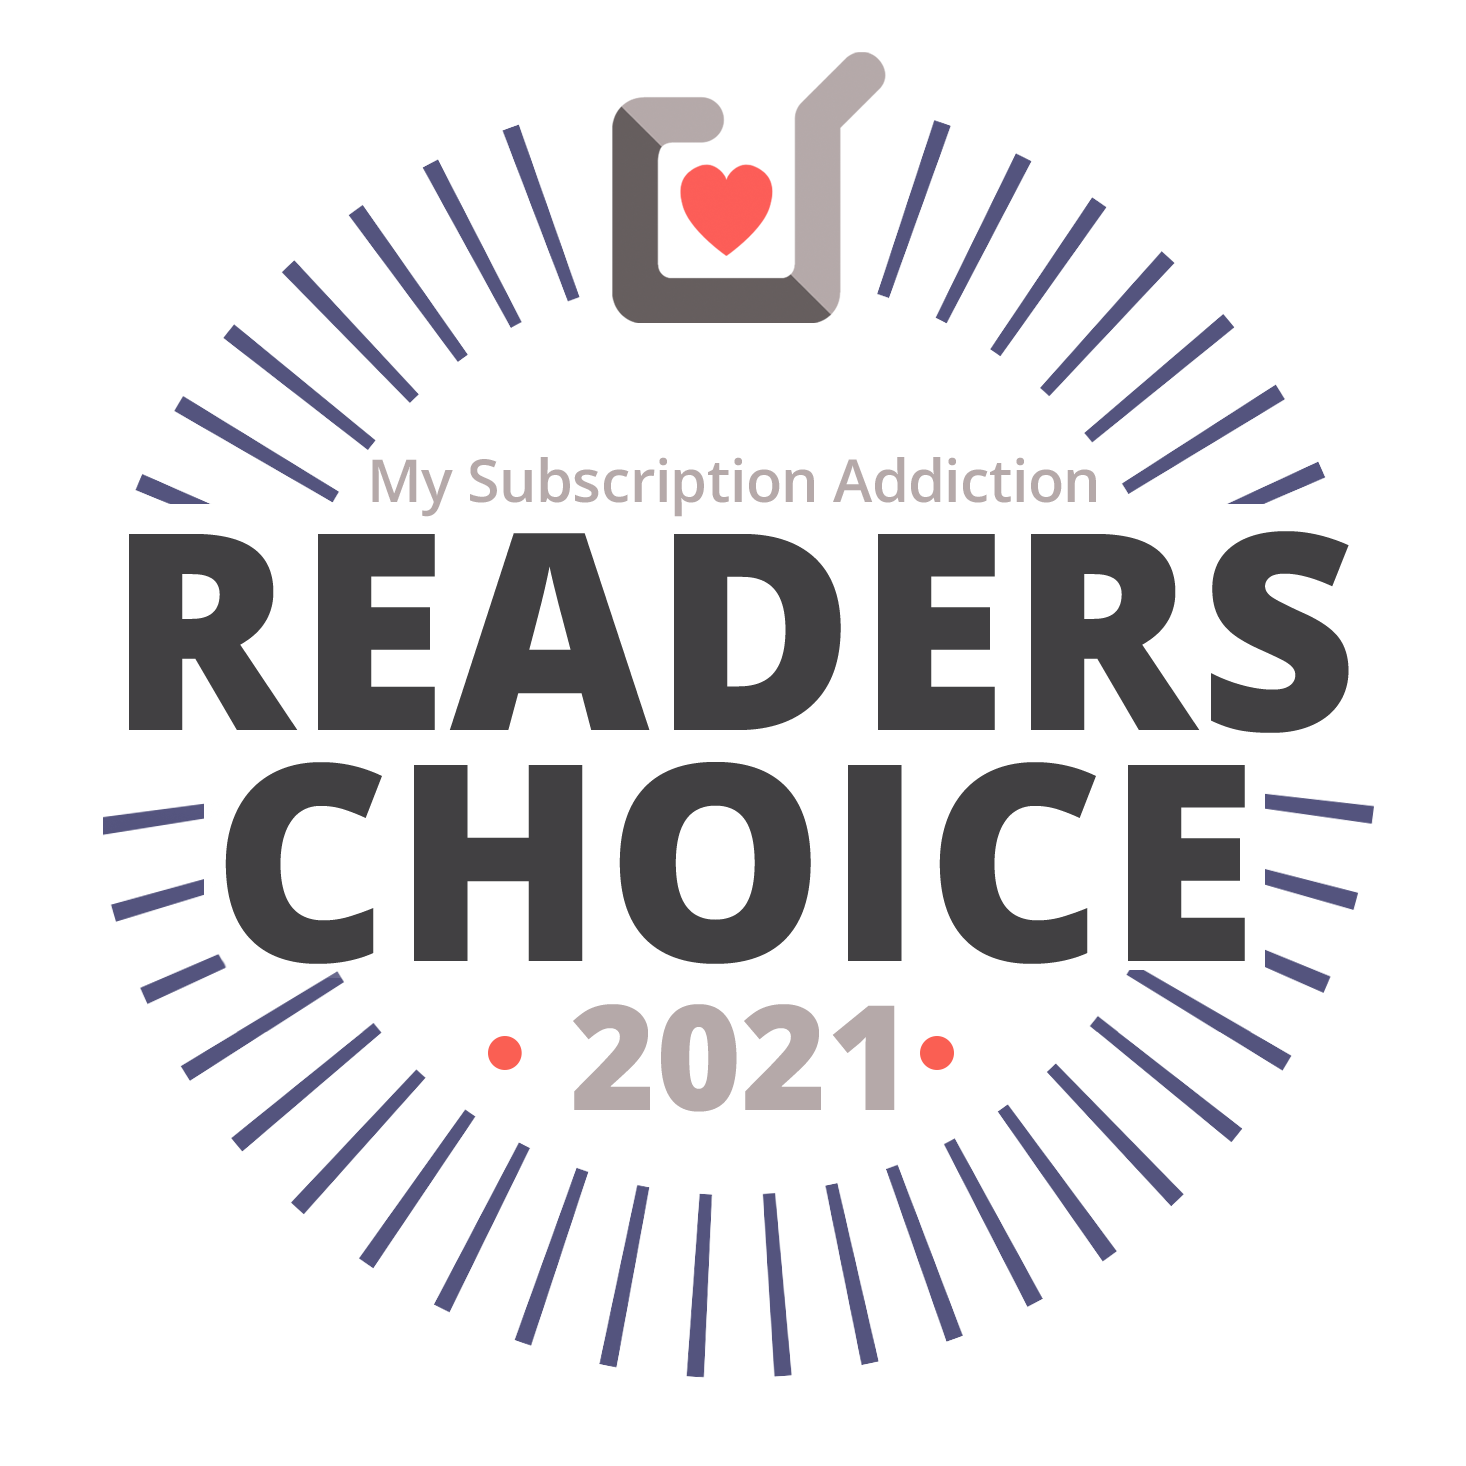 My Subscription Addiction: Readers Choice Award 2021